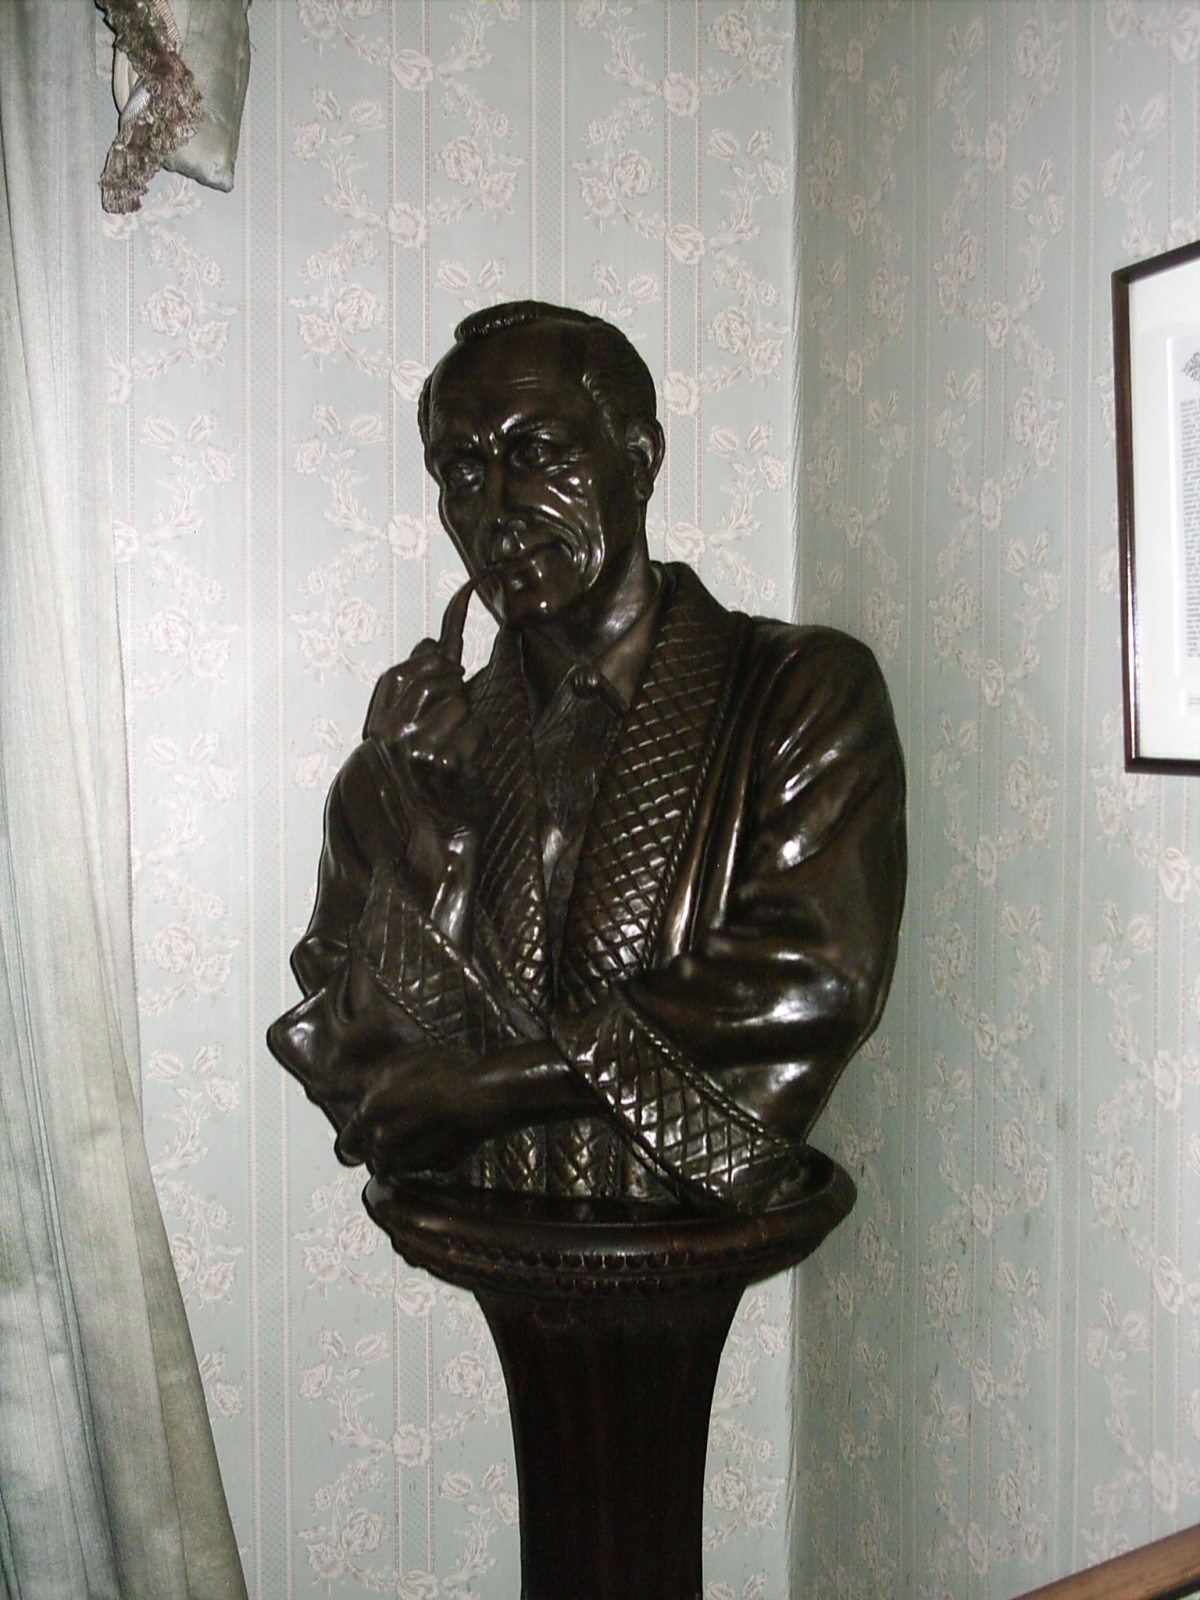 a statue of a man in a coat